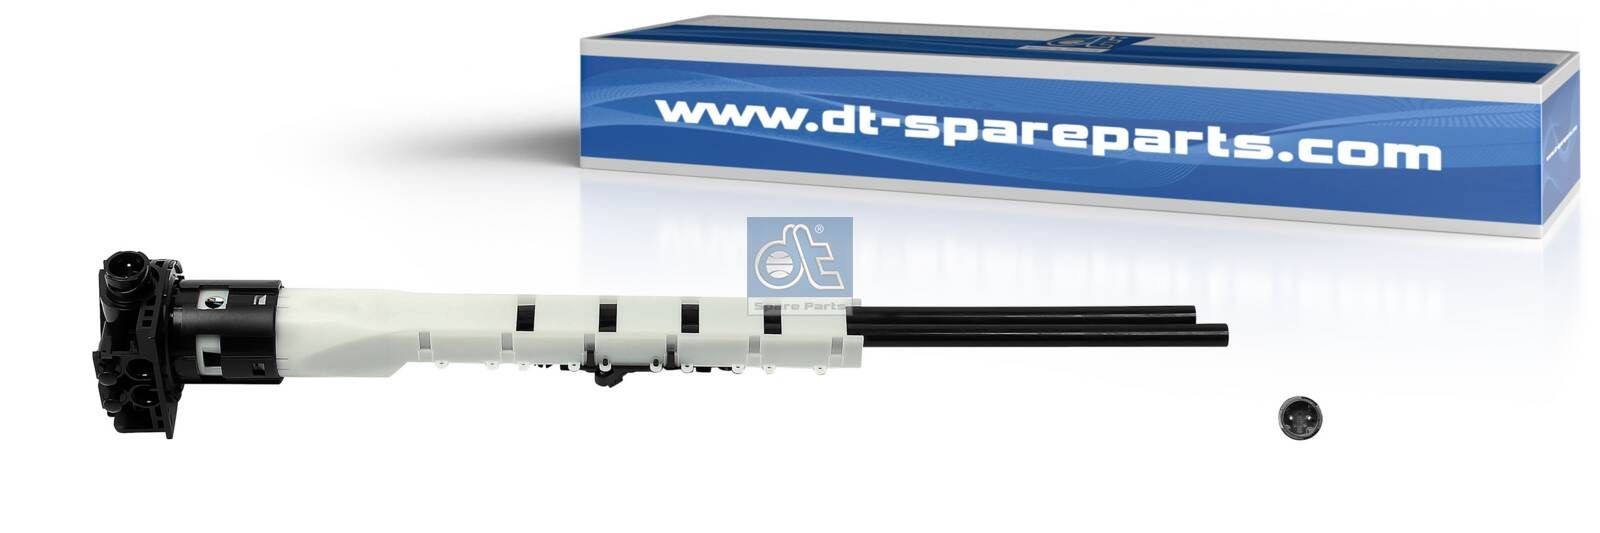 463254 Tankgeber DT Spare Parts online kaufen